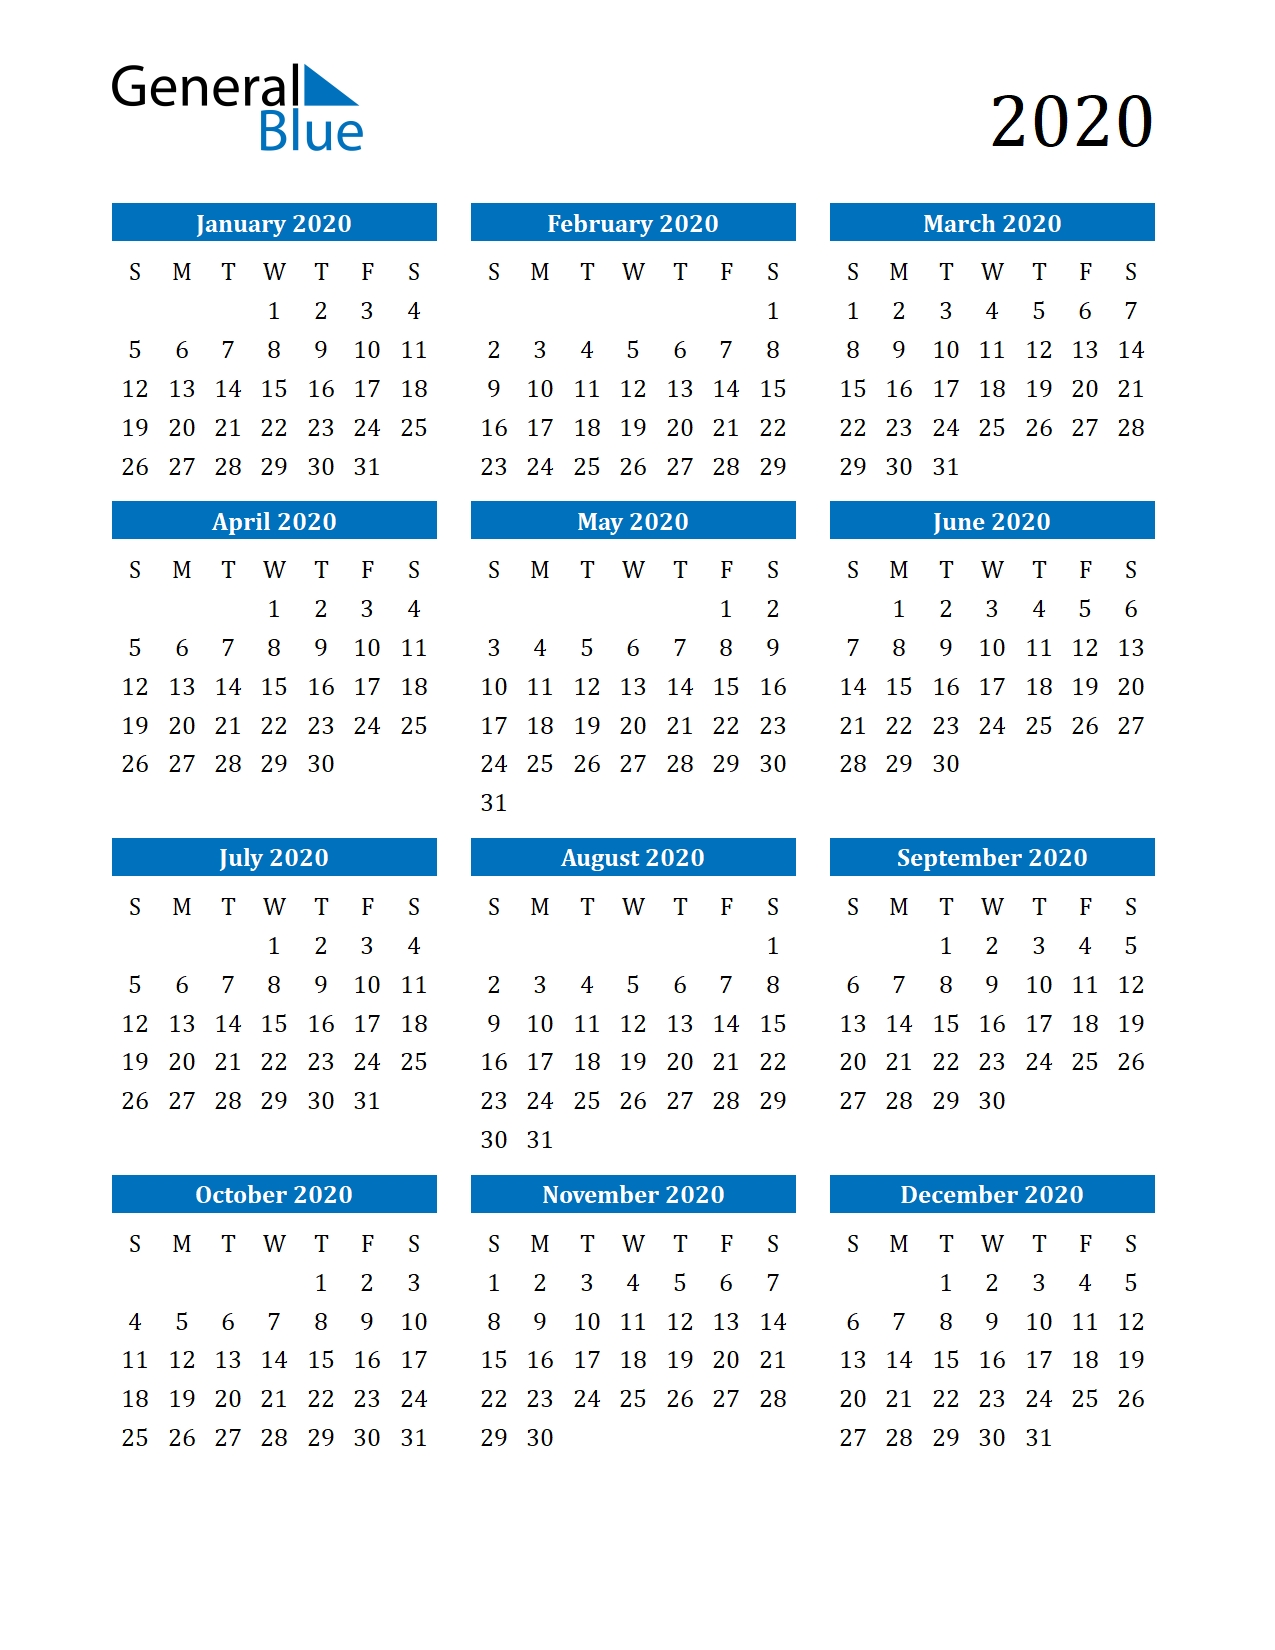 Get August Through December Calendar